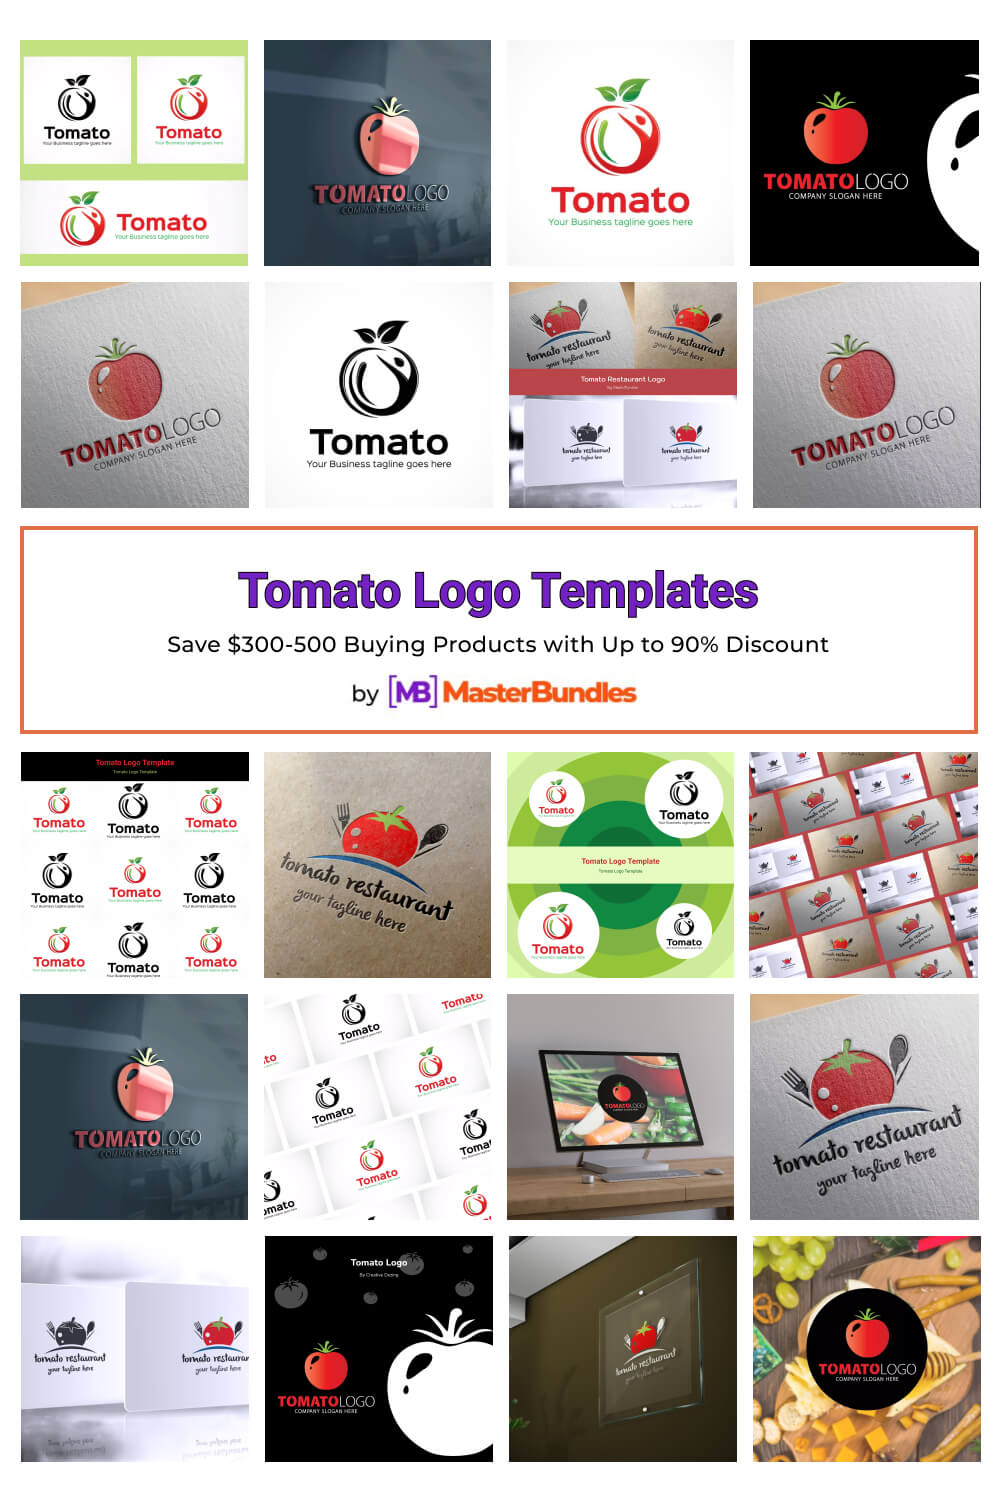 tomato logo templates pinterest image.